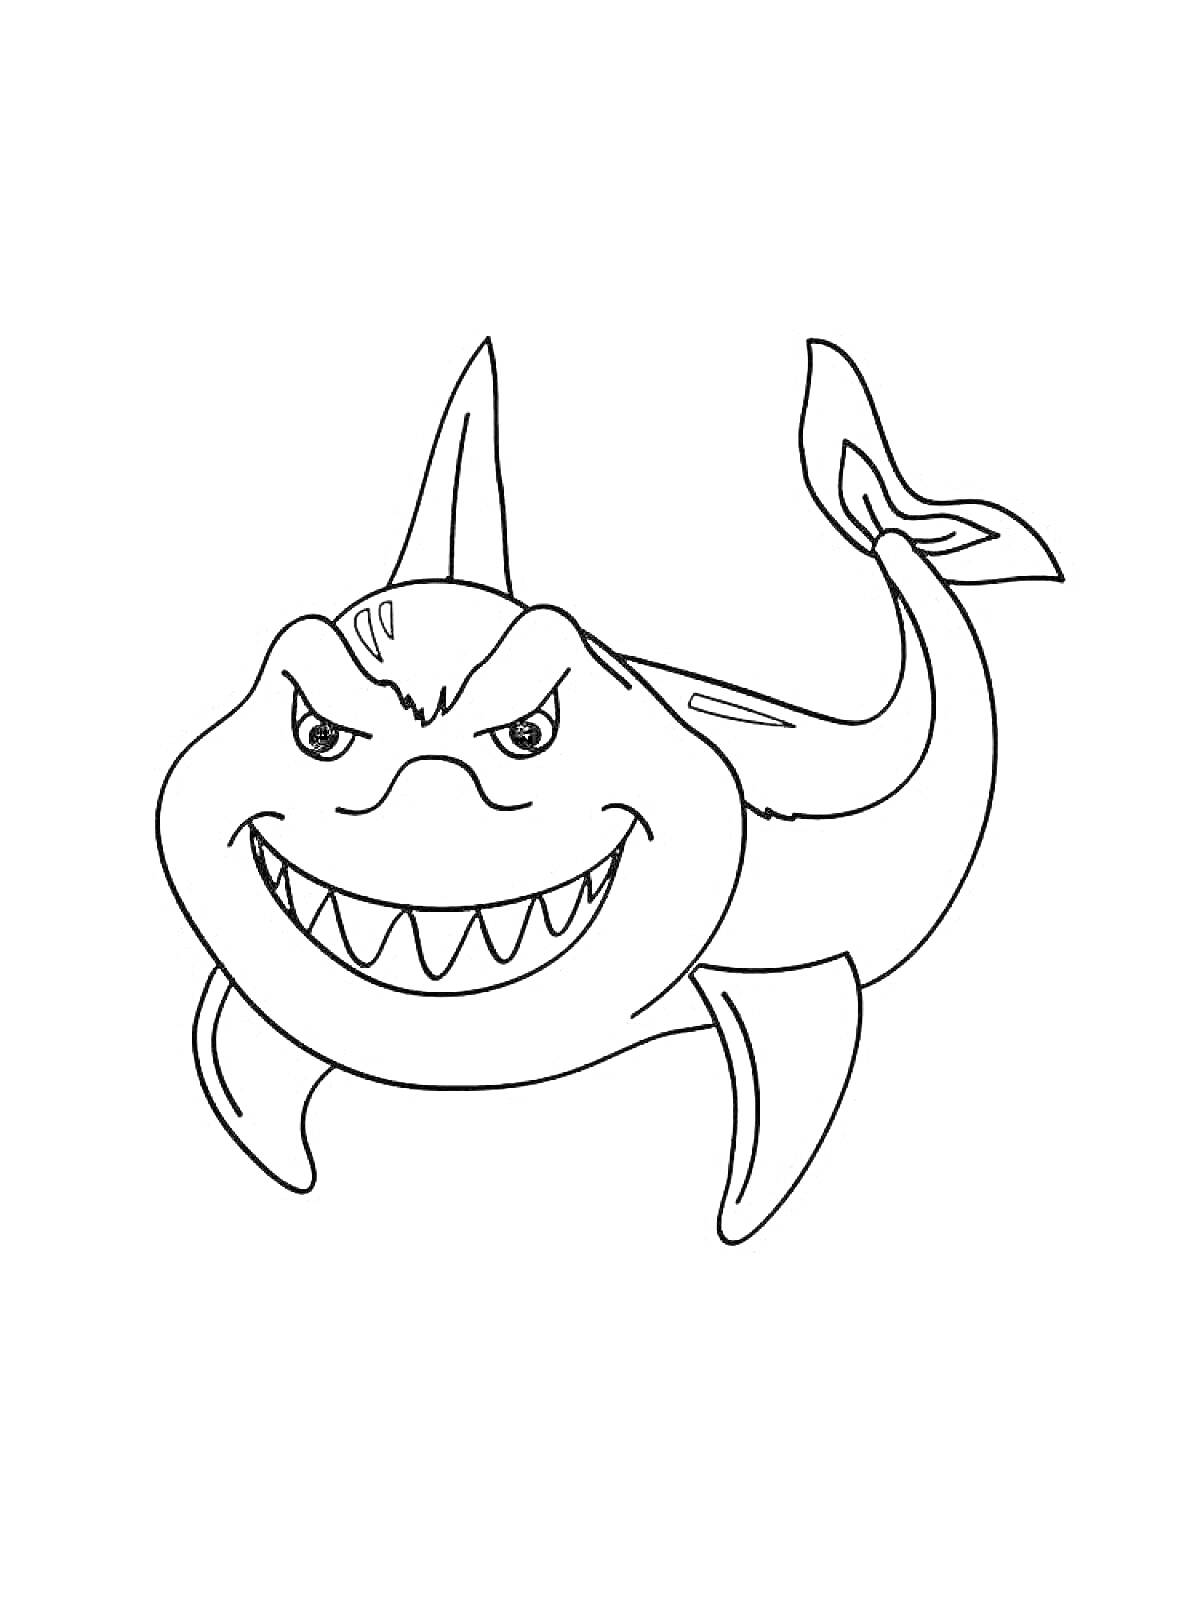 Раскраска Улыбающаяся акула с зубами и плавниками